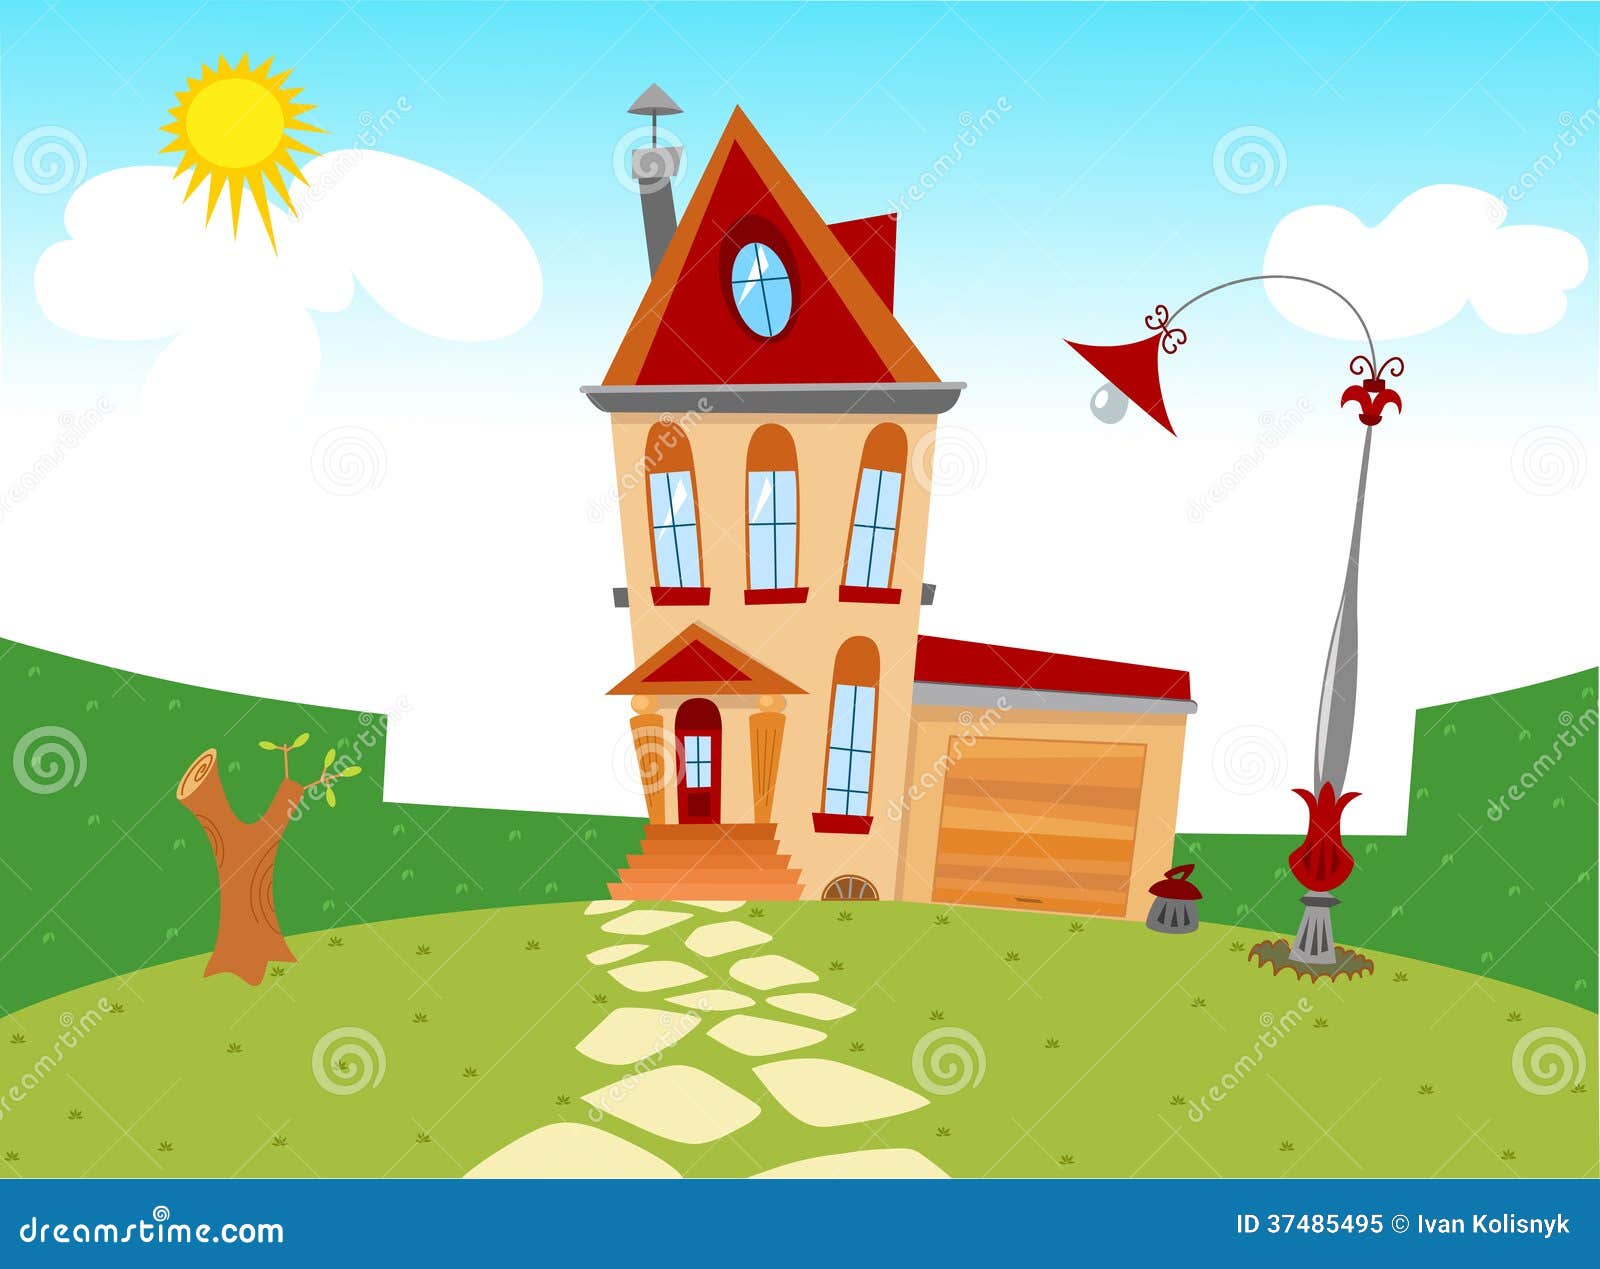 Tiny Cartoon House Royalty Free Stock Photo - Image: 37485495